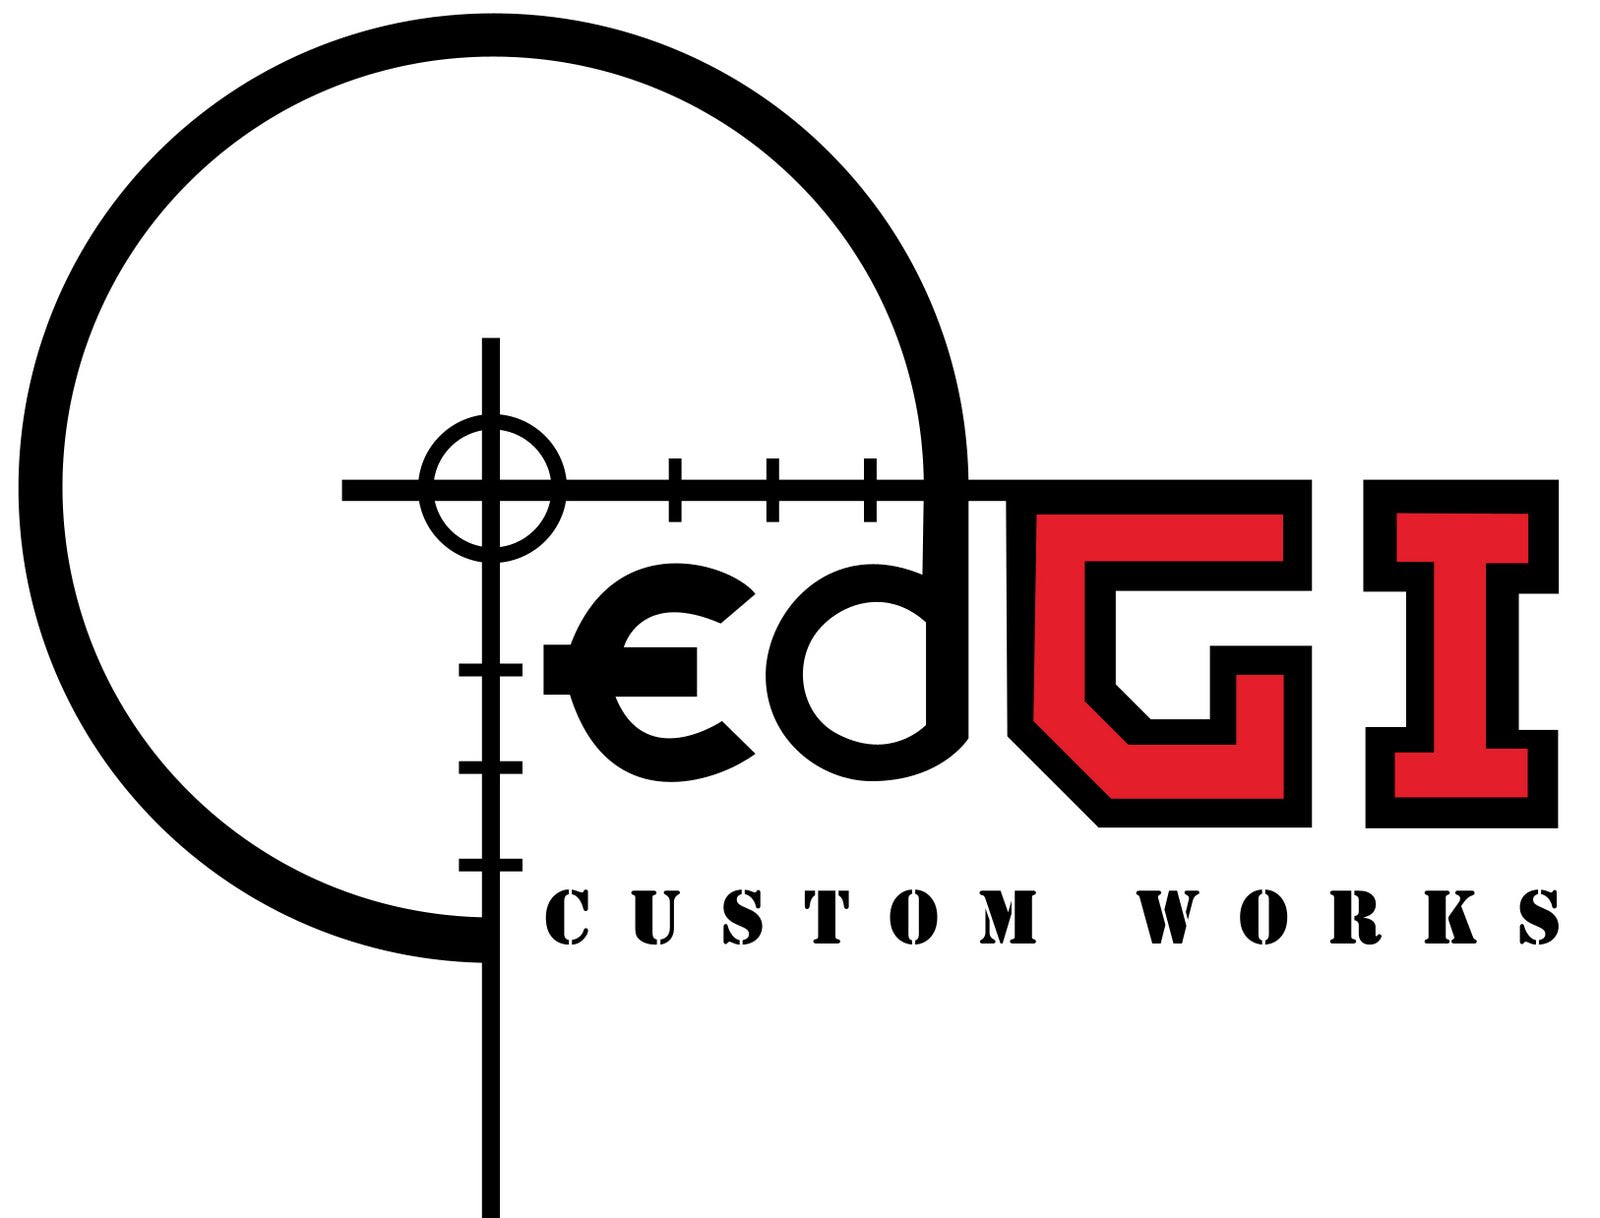 Pre-Order - Edgi Customs - VSR Bolt Handle and end cap - Ebog Designs